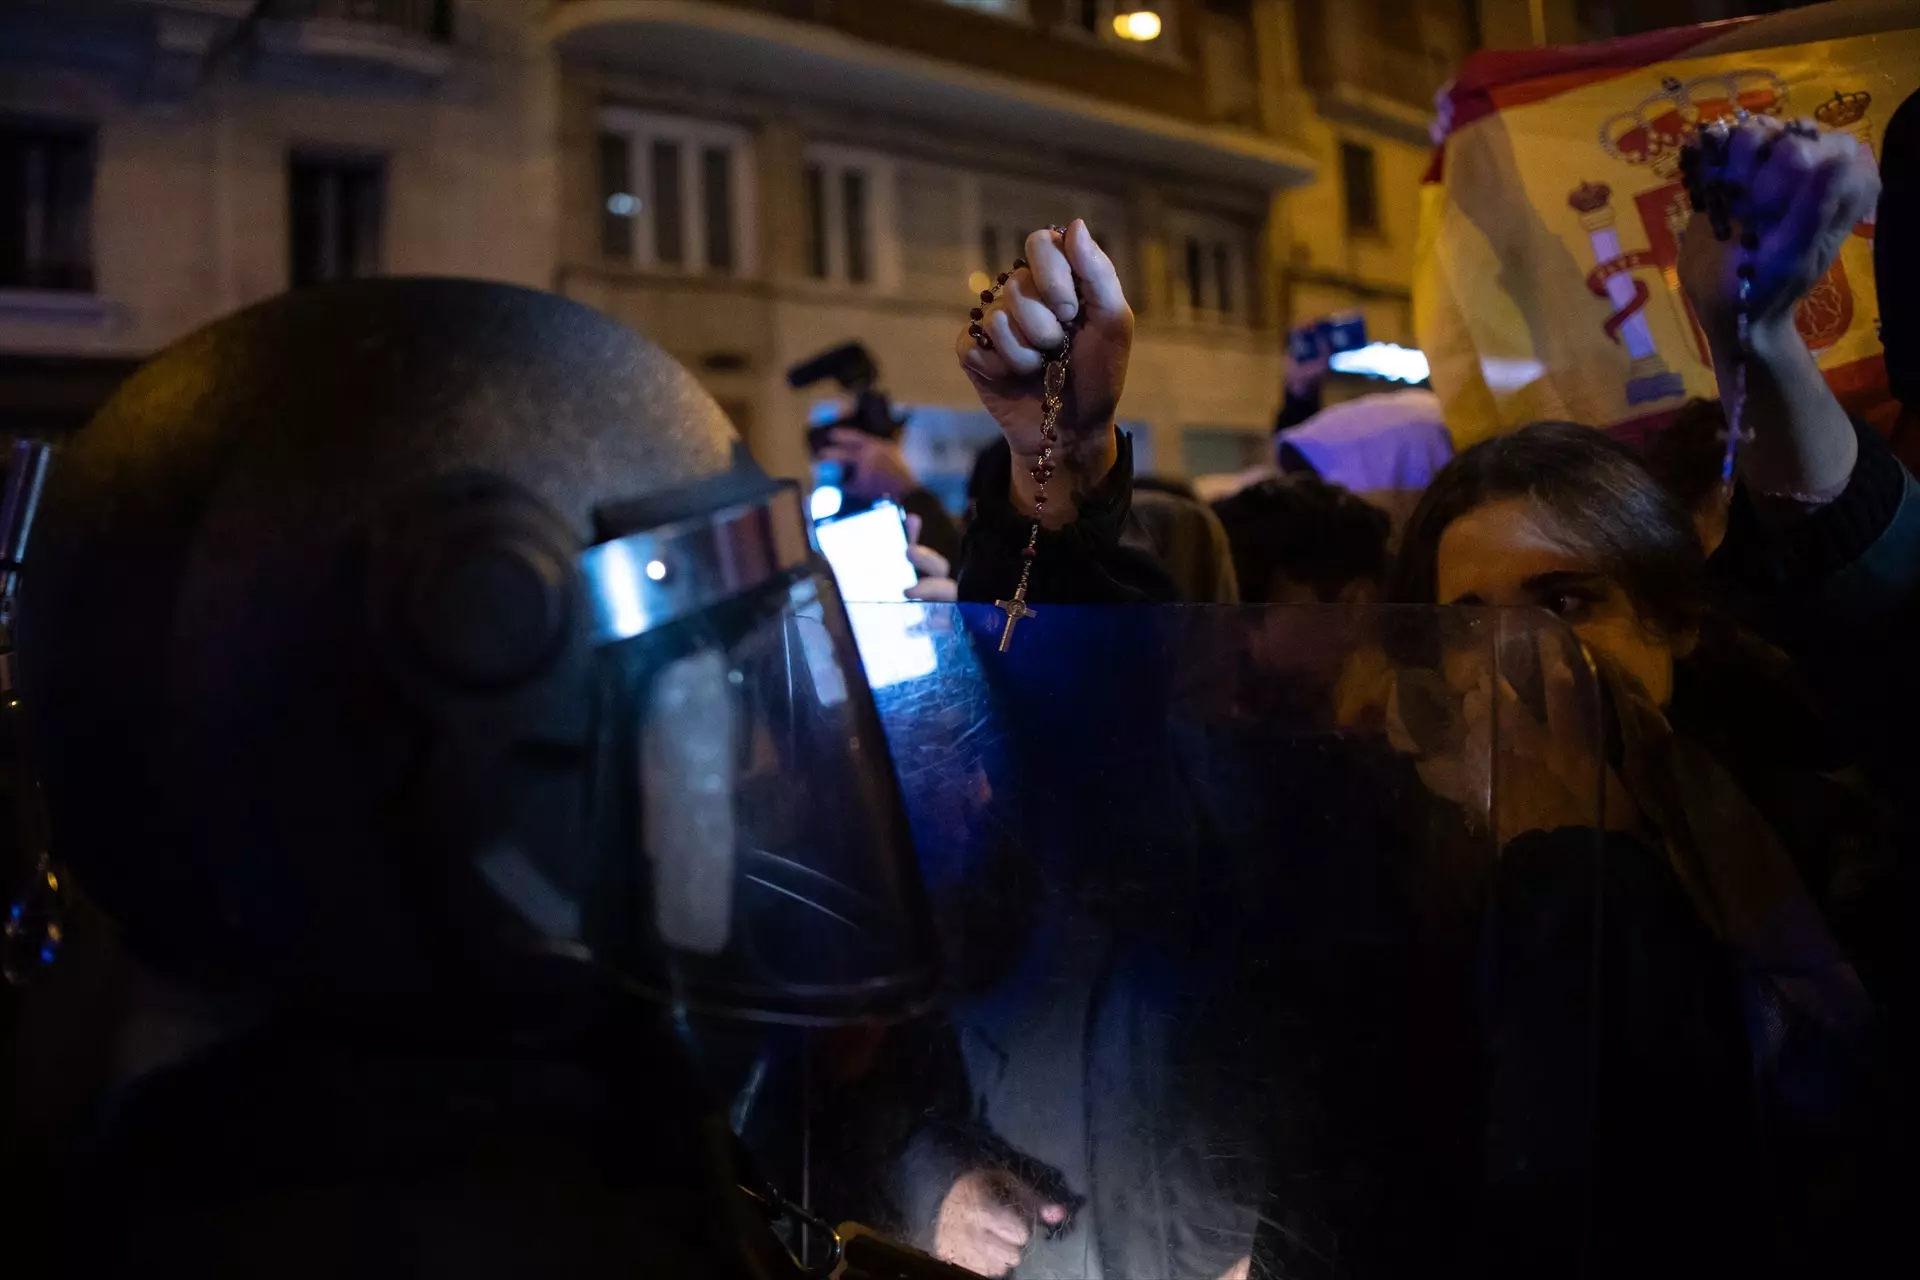 Manifestantes con rosarios en las manos se enfrentan a un agente de Policía, durante una protesta contra la amnistía frente a la sede del PSOE. — Alejandro Martínez Vélez / Europa Press